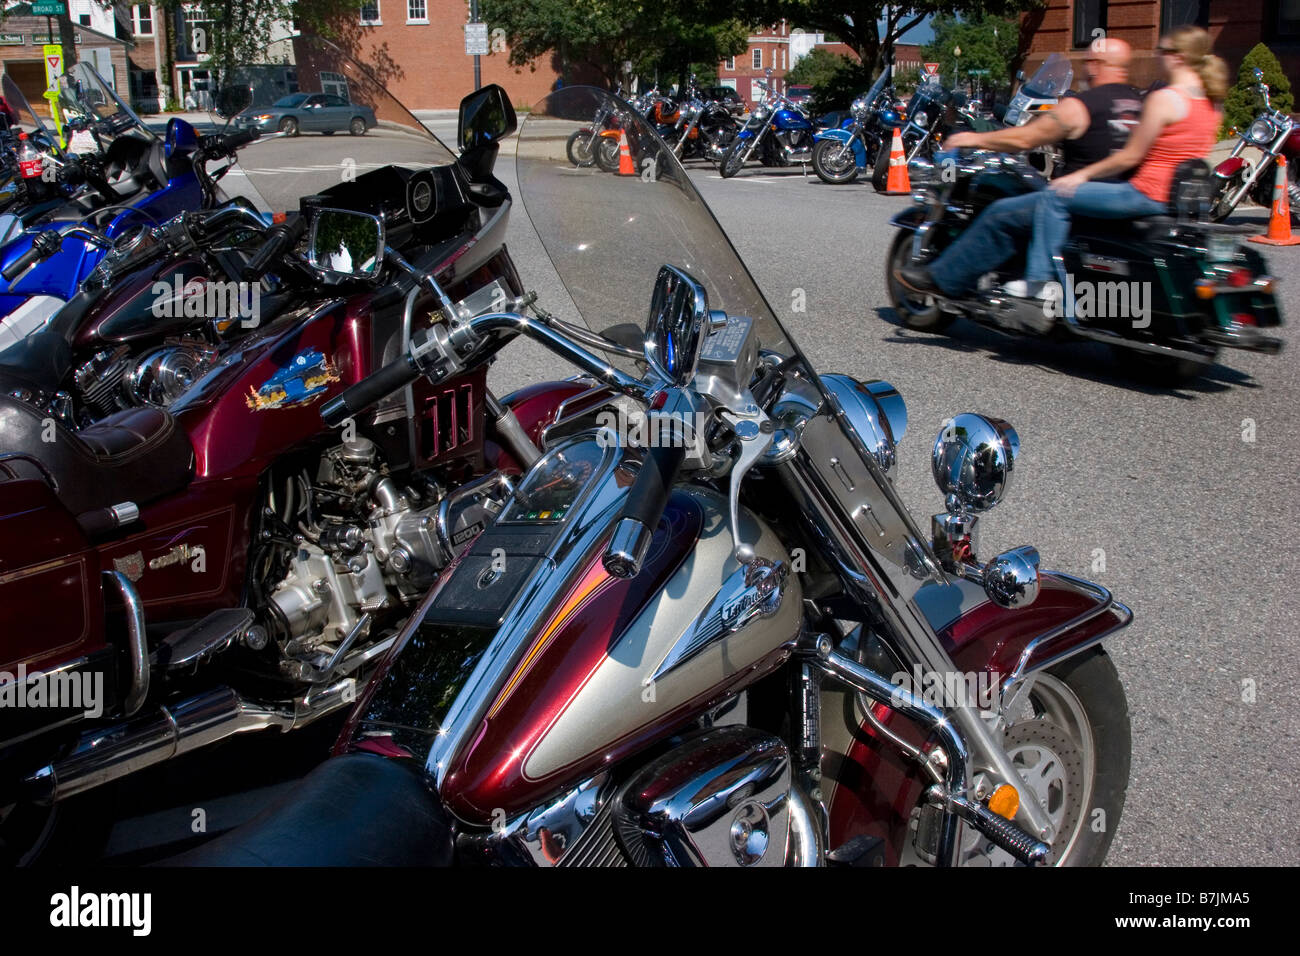 Un couple leur trajet depuis plusieurs moto motos garées sur un jour d'été ensoleillé Banque D'Images